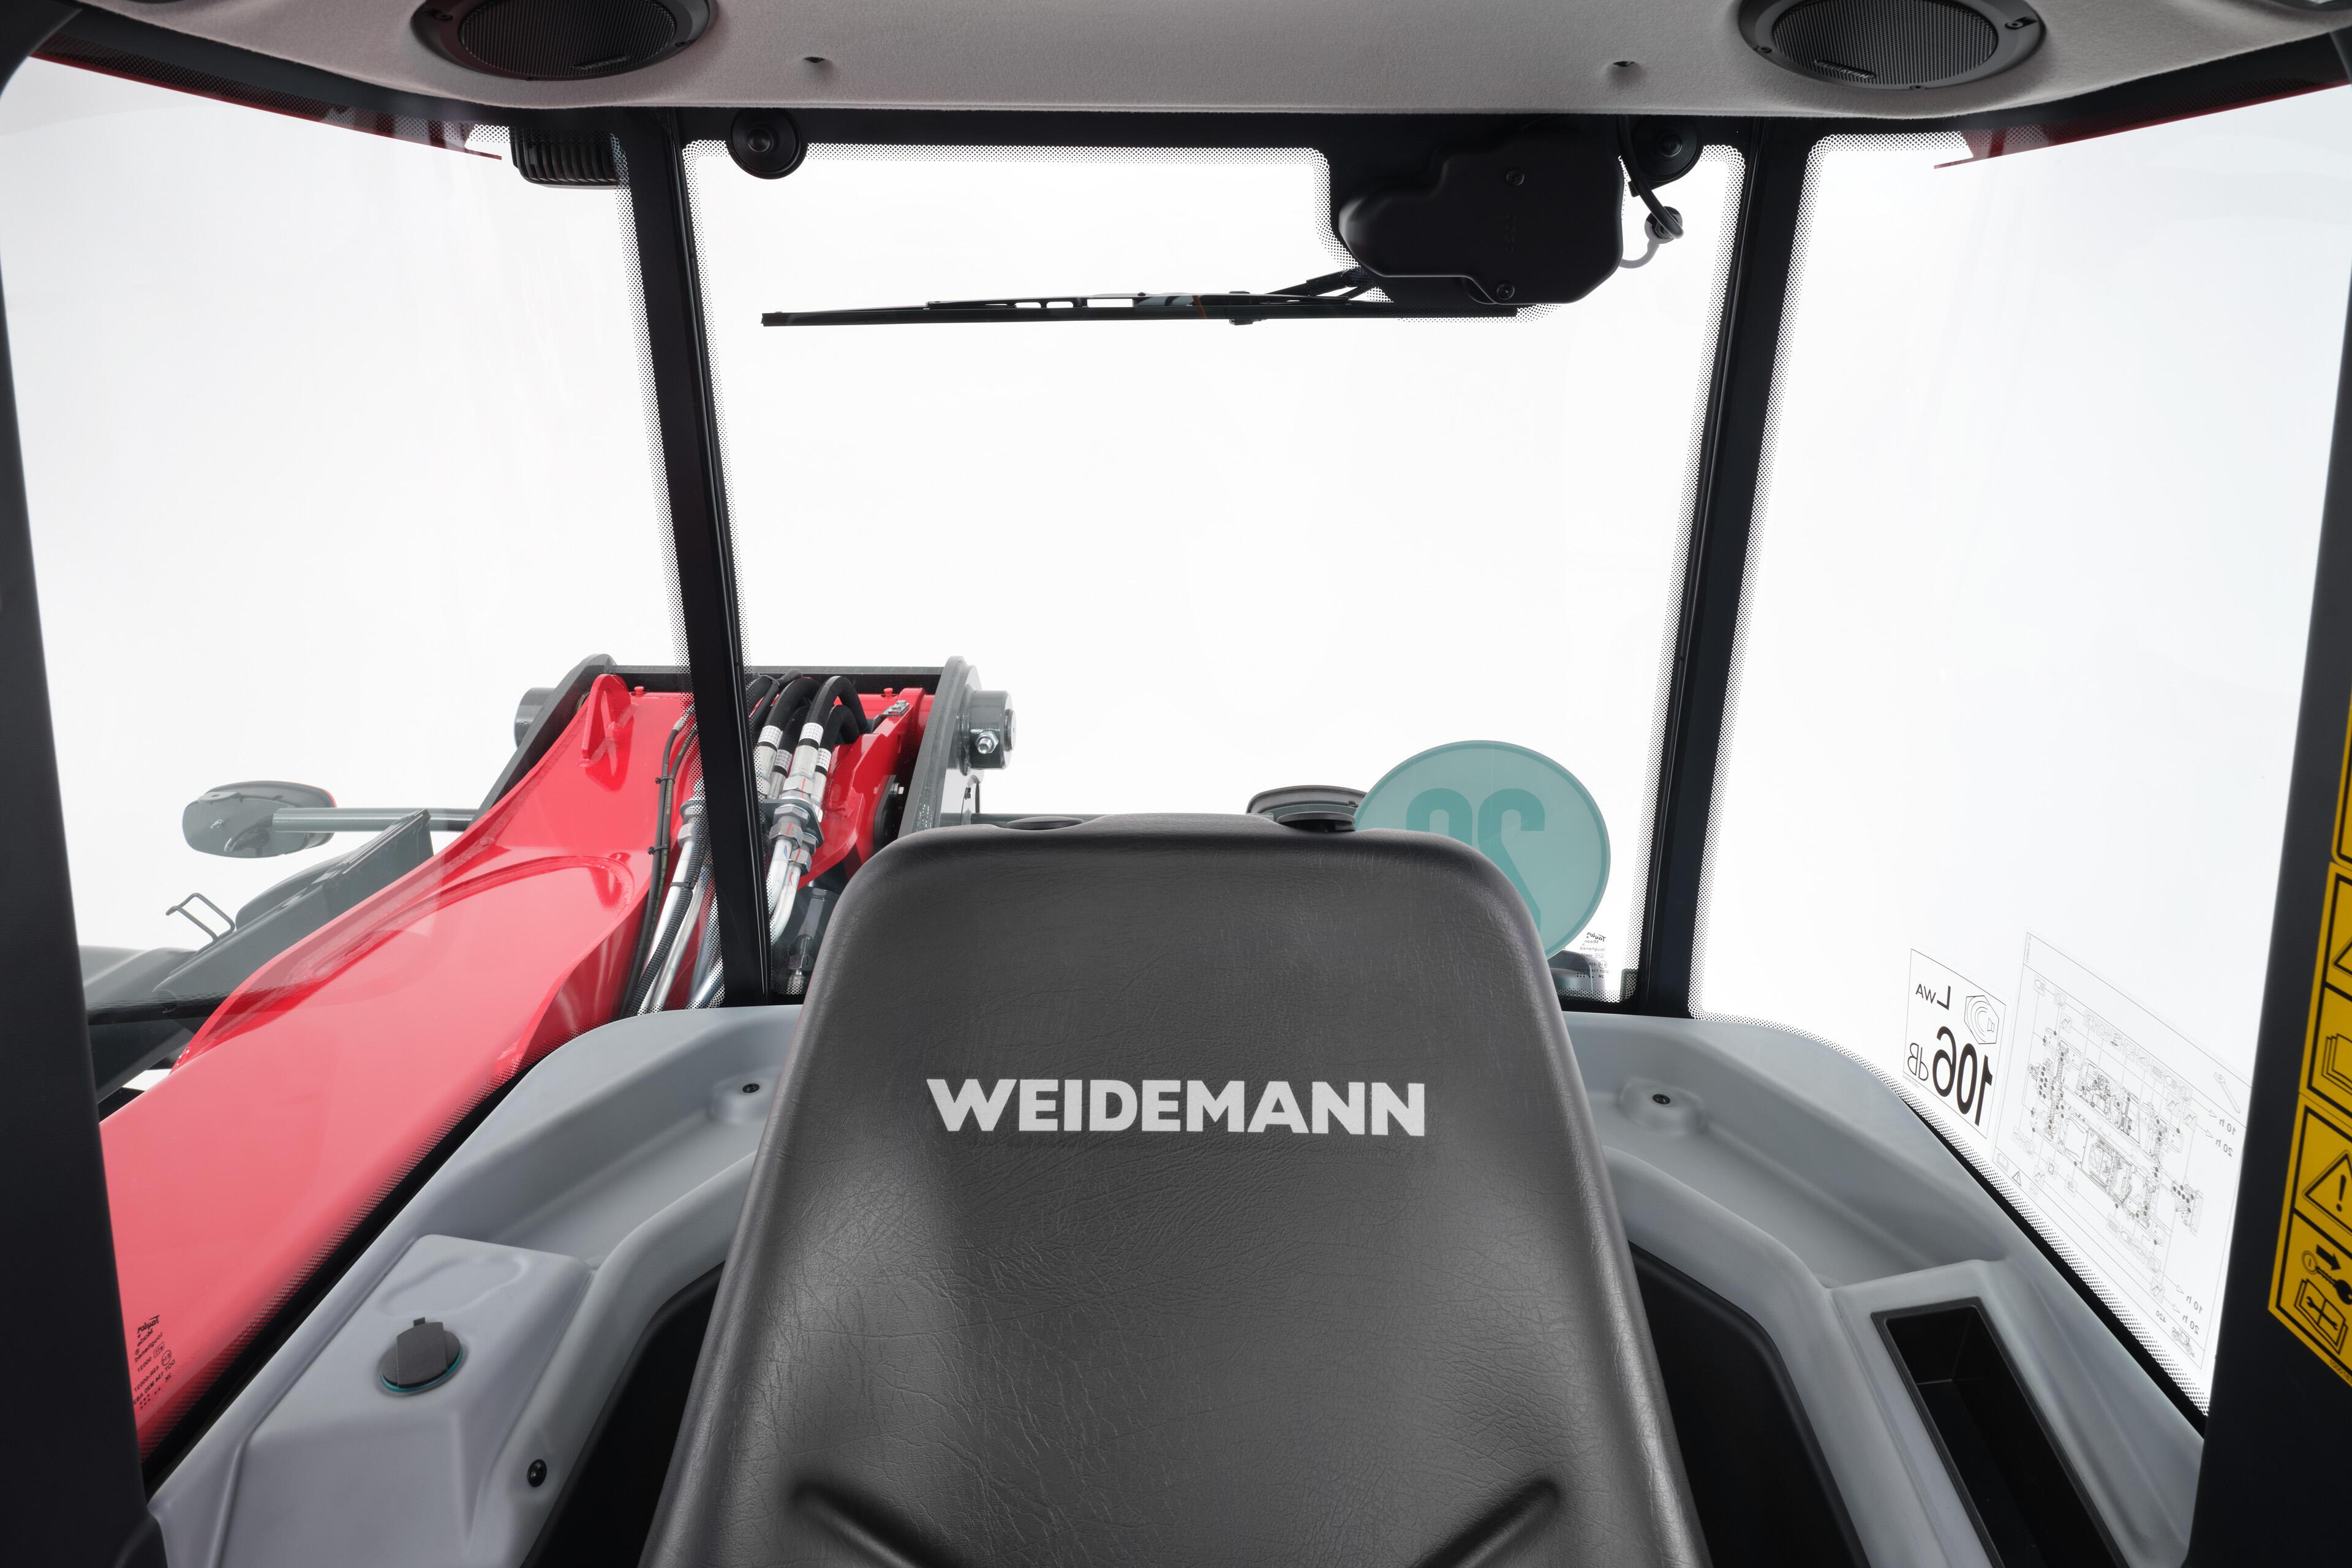 Weidemann 7m telehandler Best View Cabin